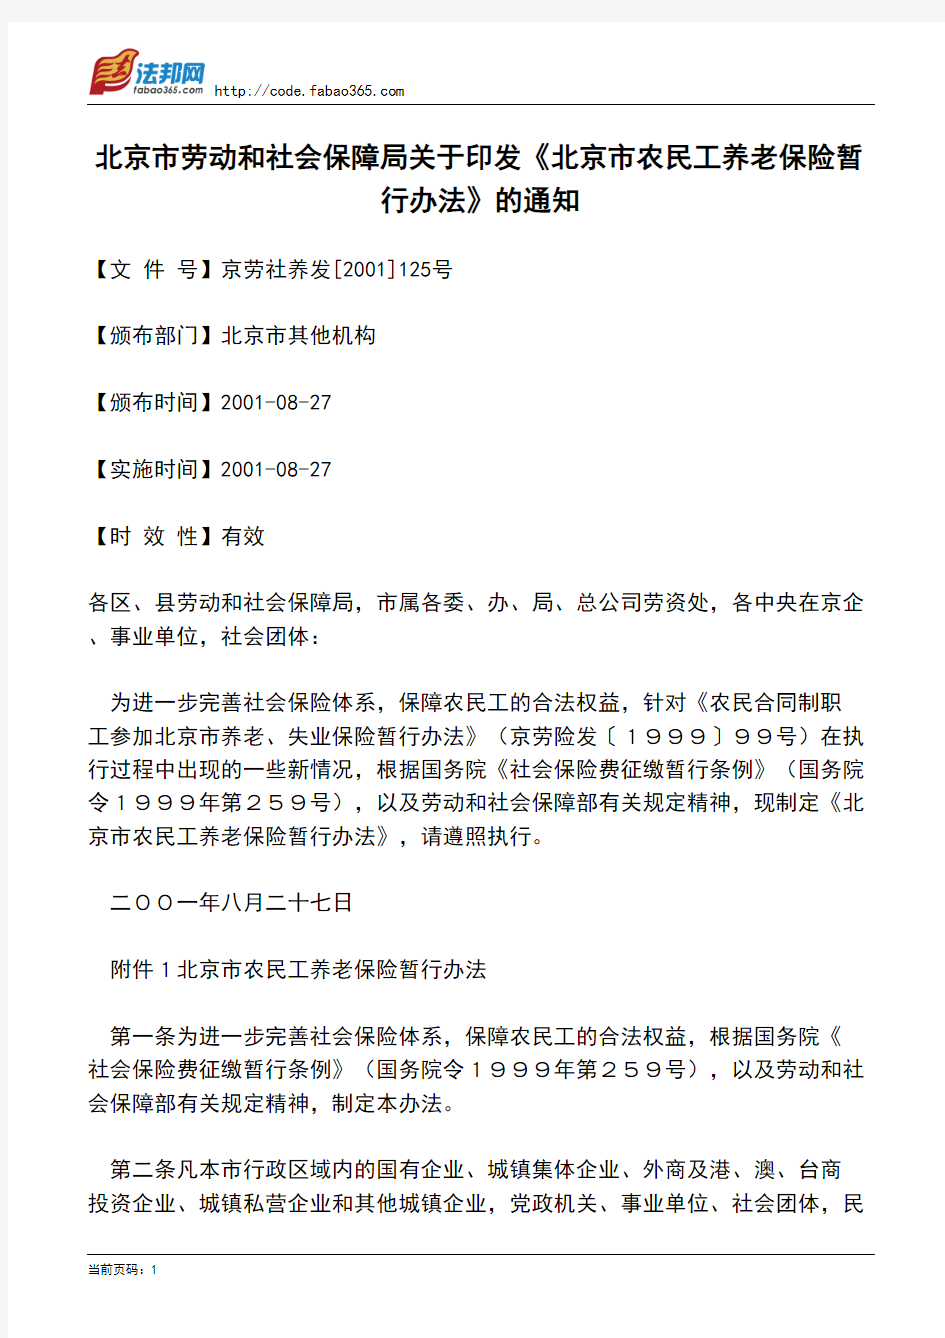 北京市劳动和社会保障局关于印发《北京市农民工养老保险暂行办法》的通知